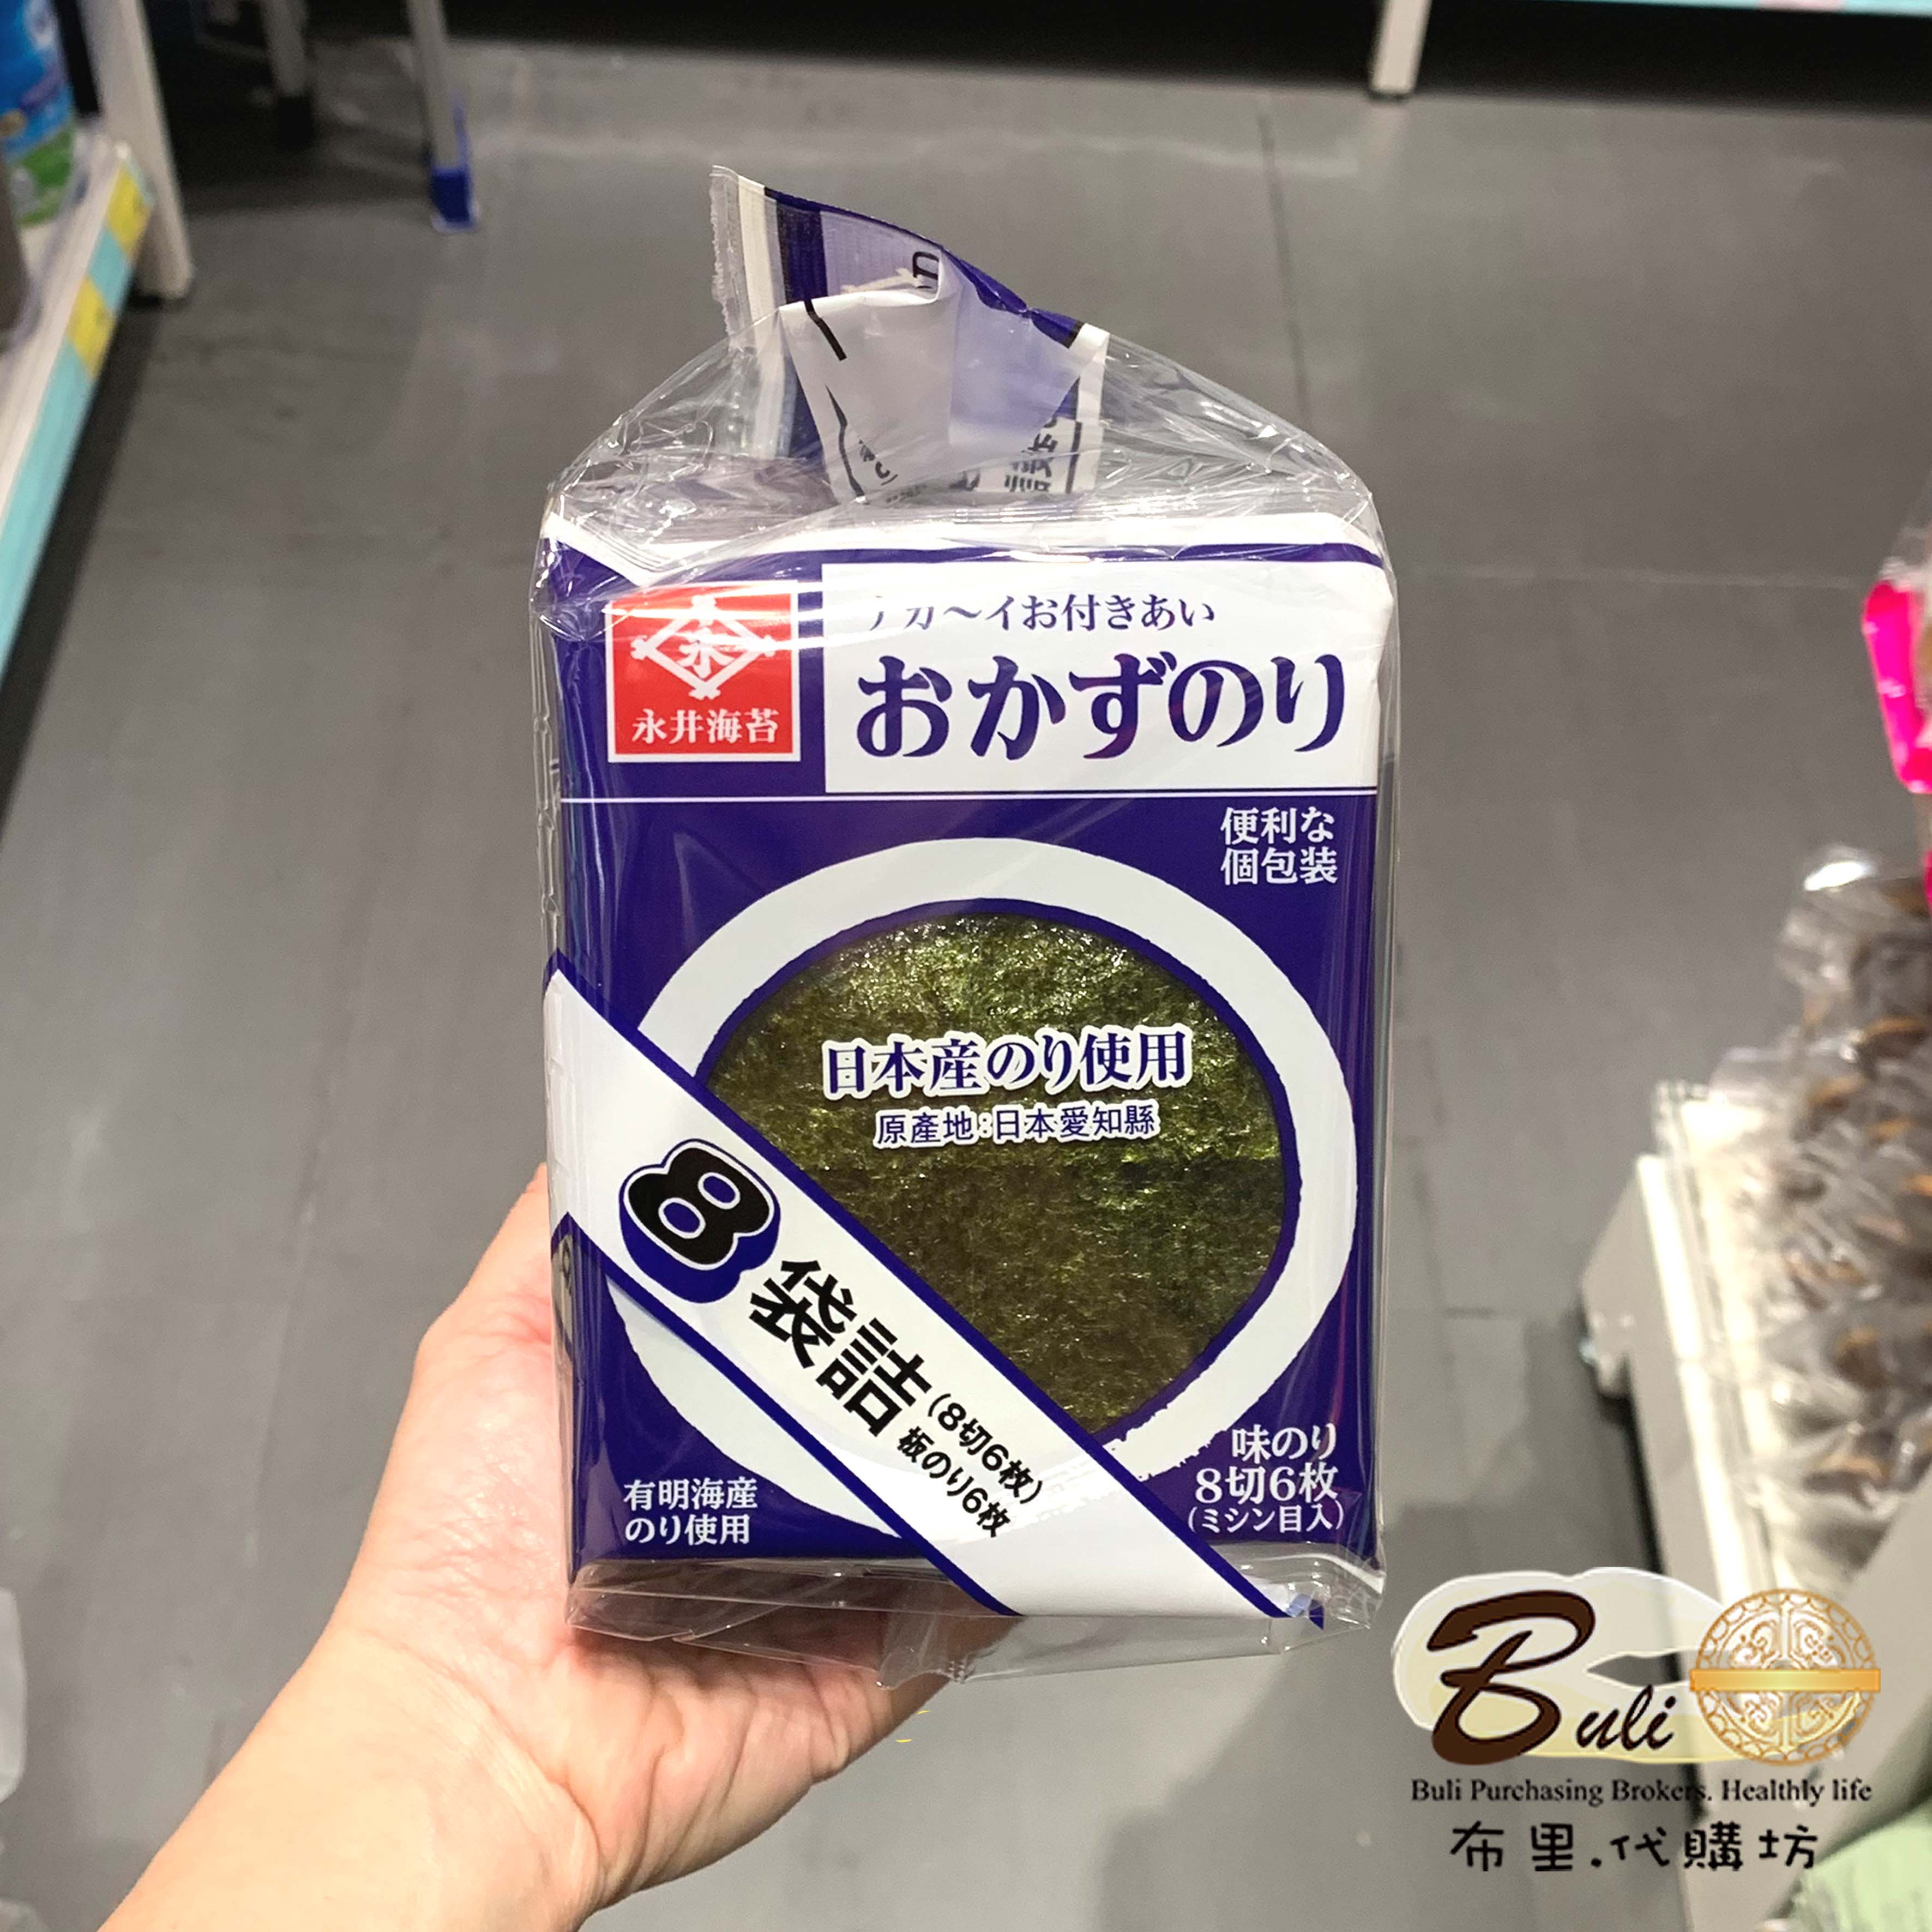 日本爱知县永井味付海苔 内含8小包